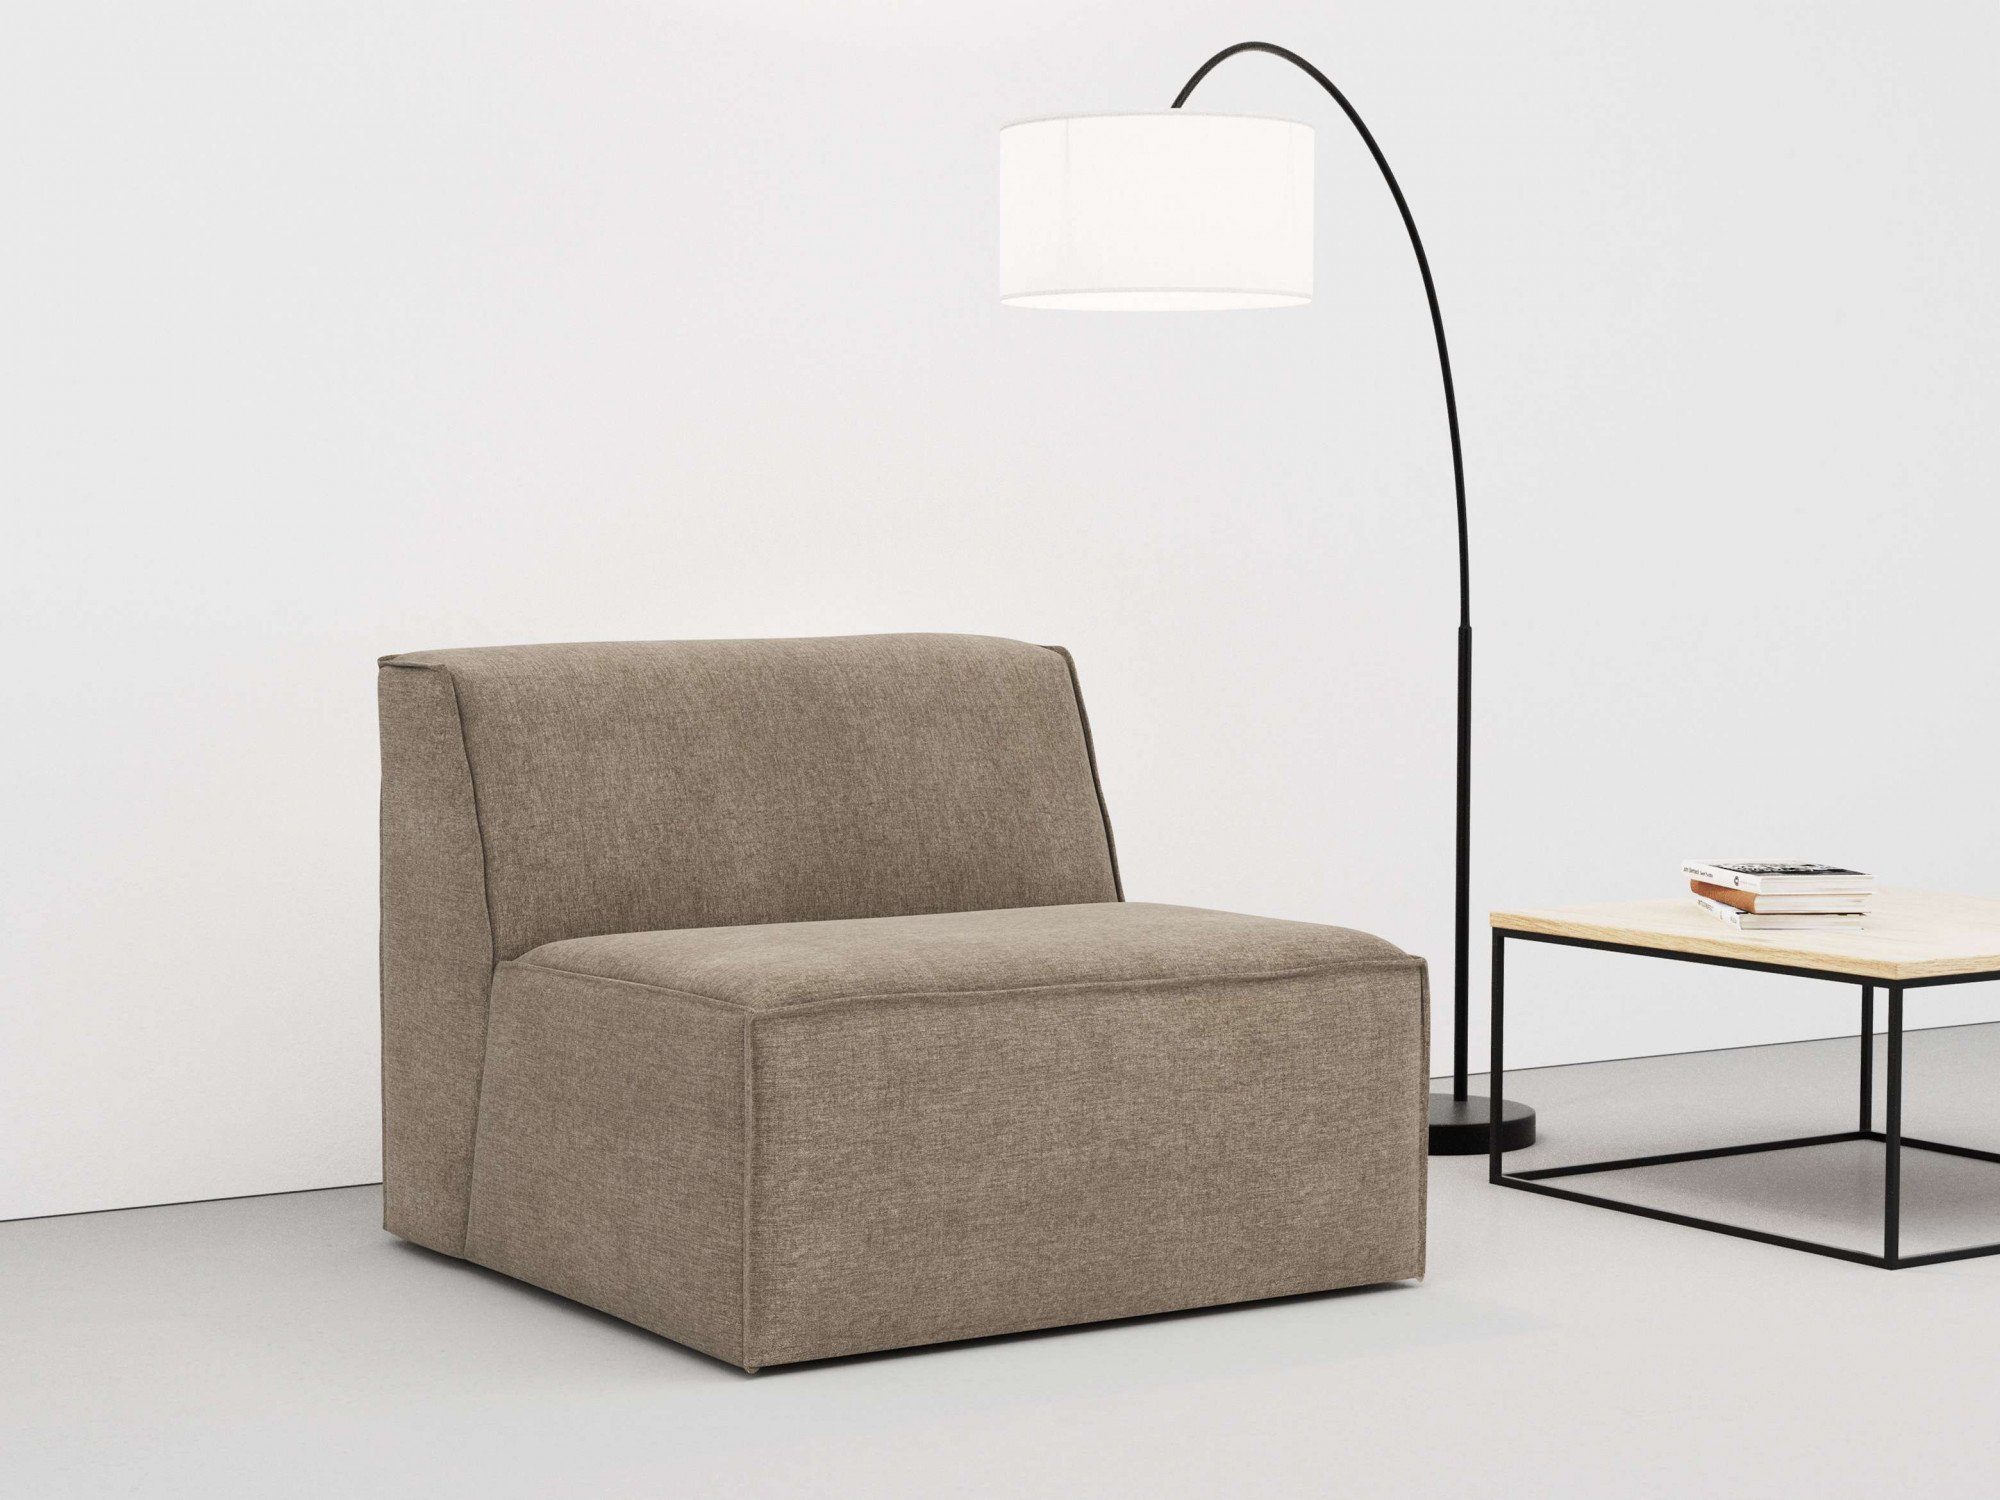 RAUM.ID Sofa-Mittelelement Norvid, mit Modulen und Auswahl taupe modular, Polsterung Komfortschaum, an große